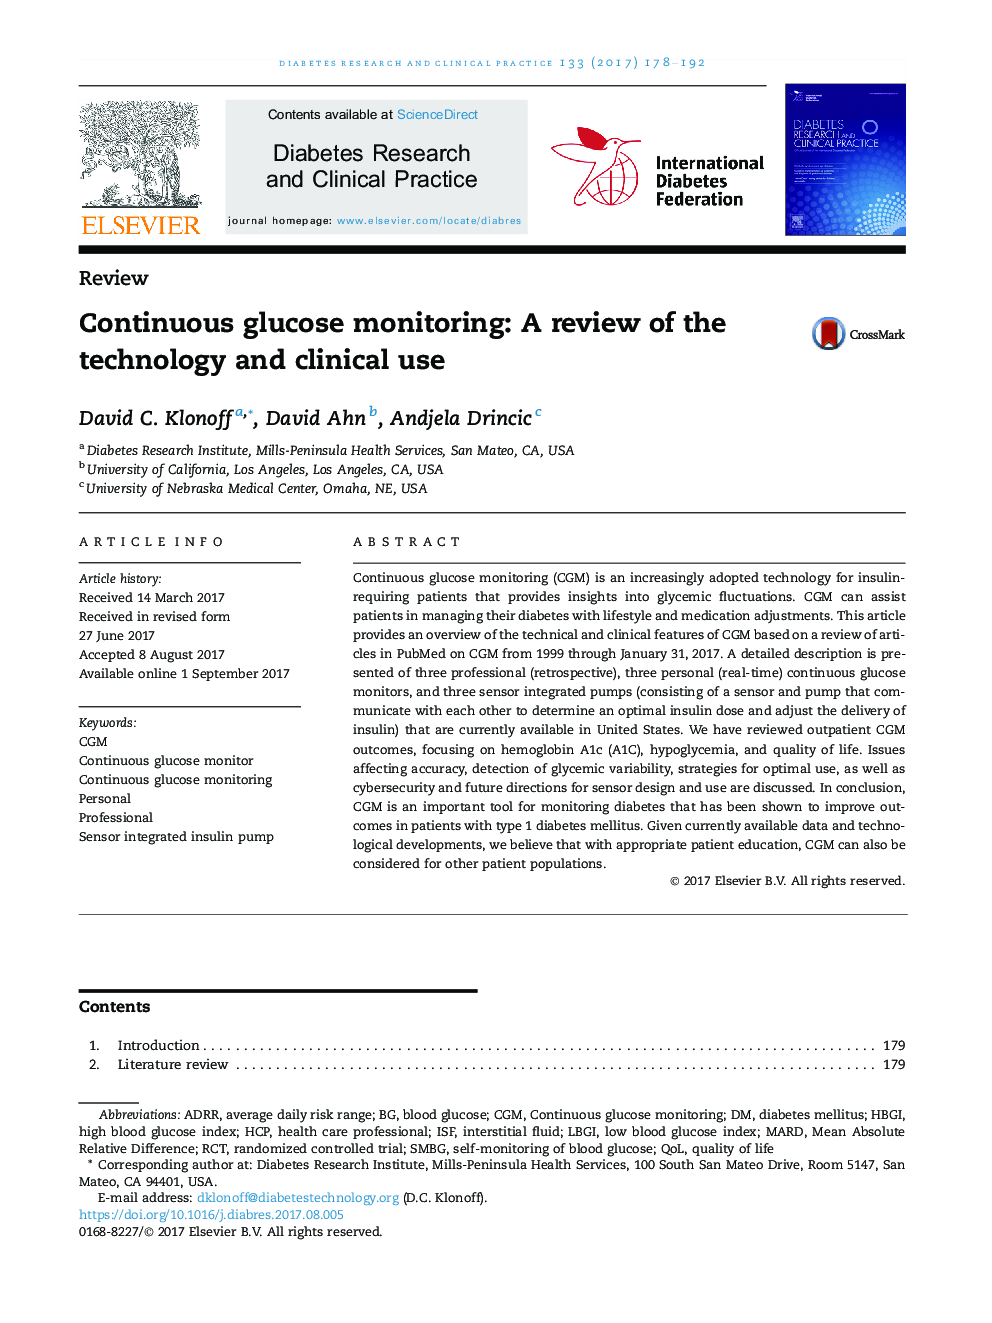 نظارت مستقیم بر قند: بررسی تکنولوژی و استفاده بالینی 